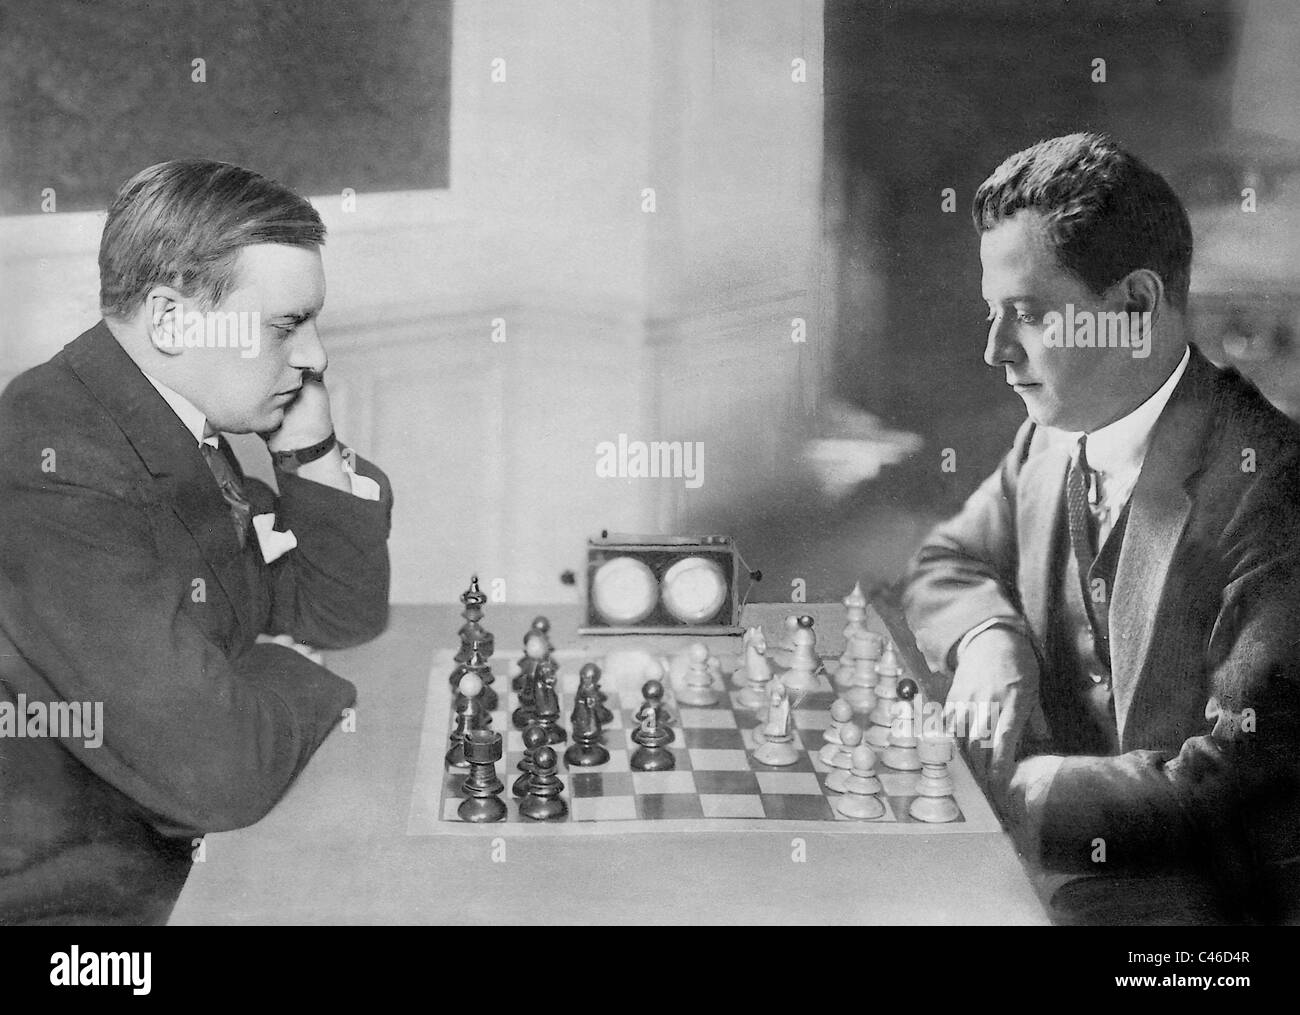 Strategia e tattica/9: Capablanca – Alekhine, Buenos Aires 1927